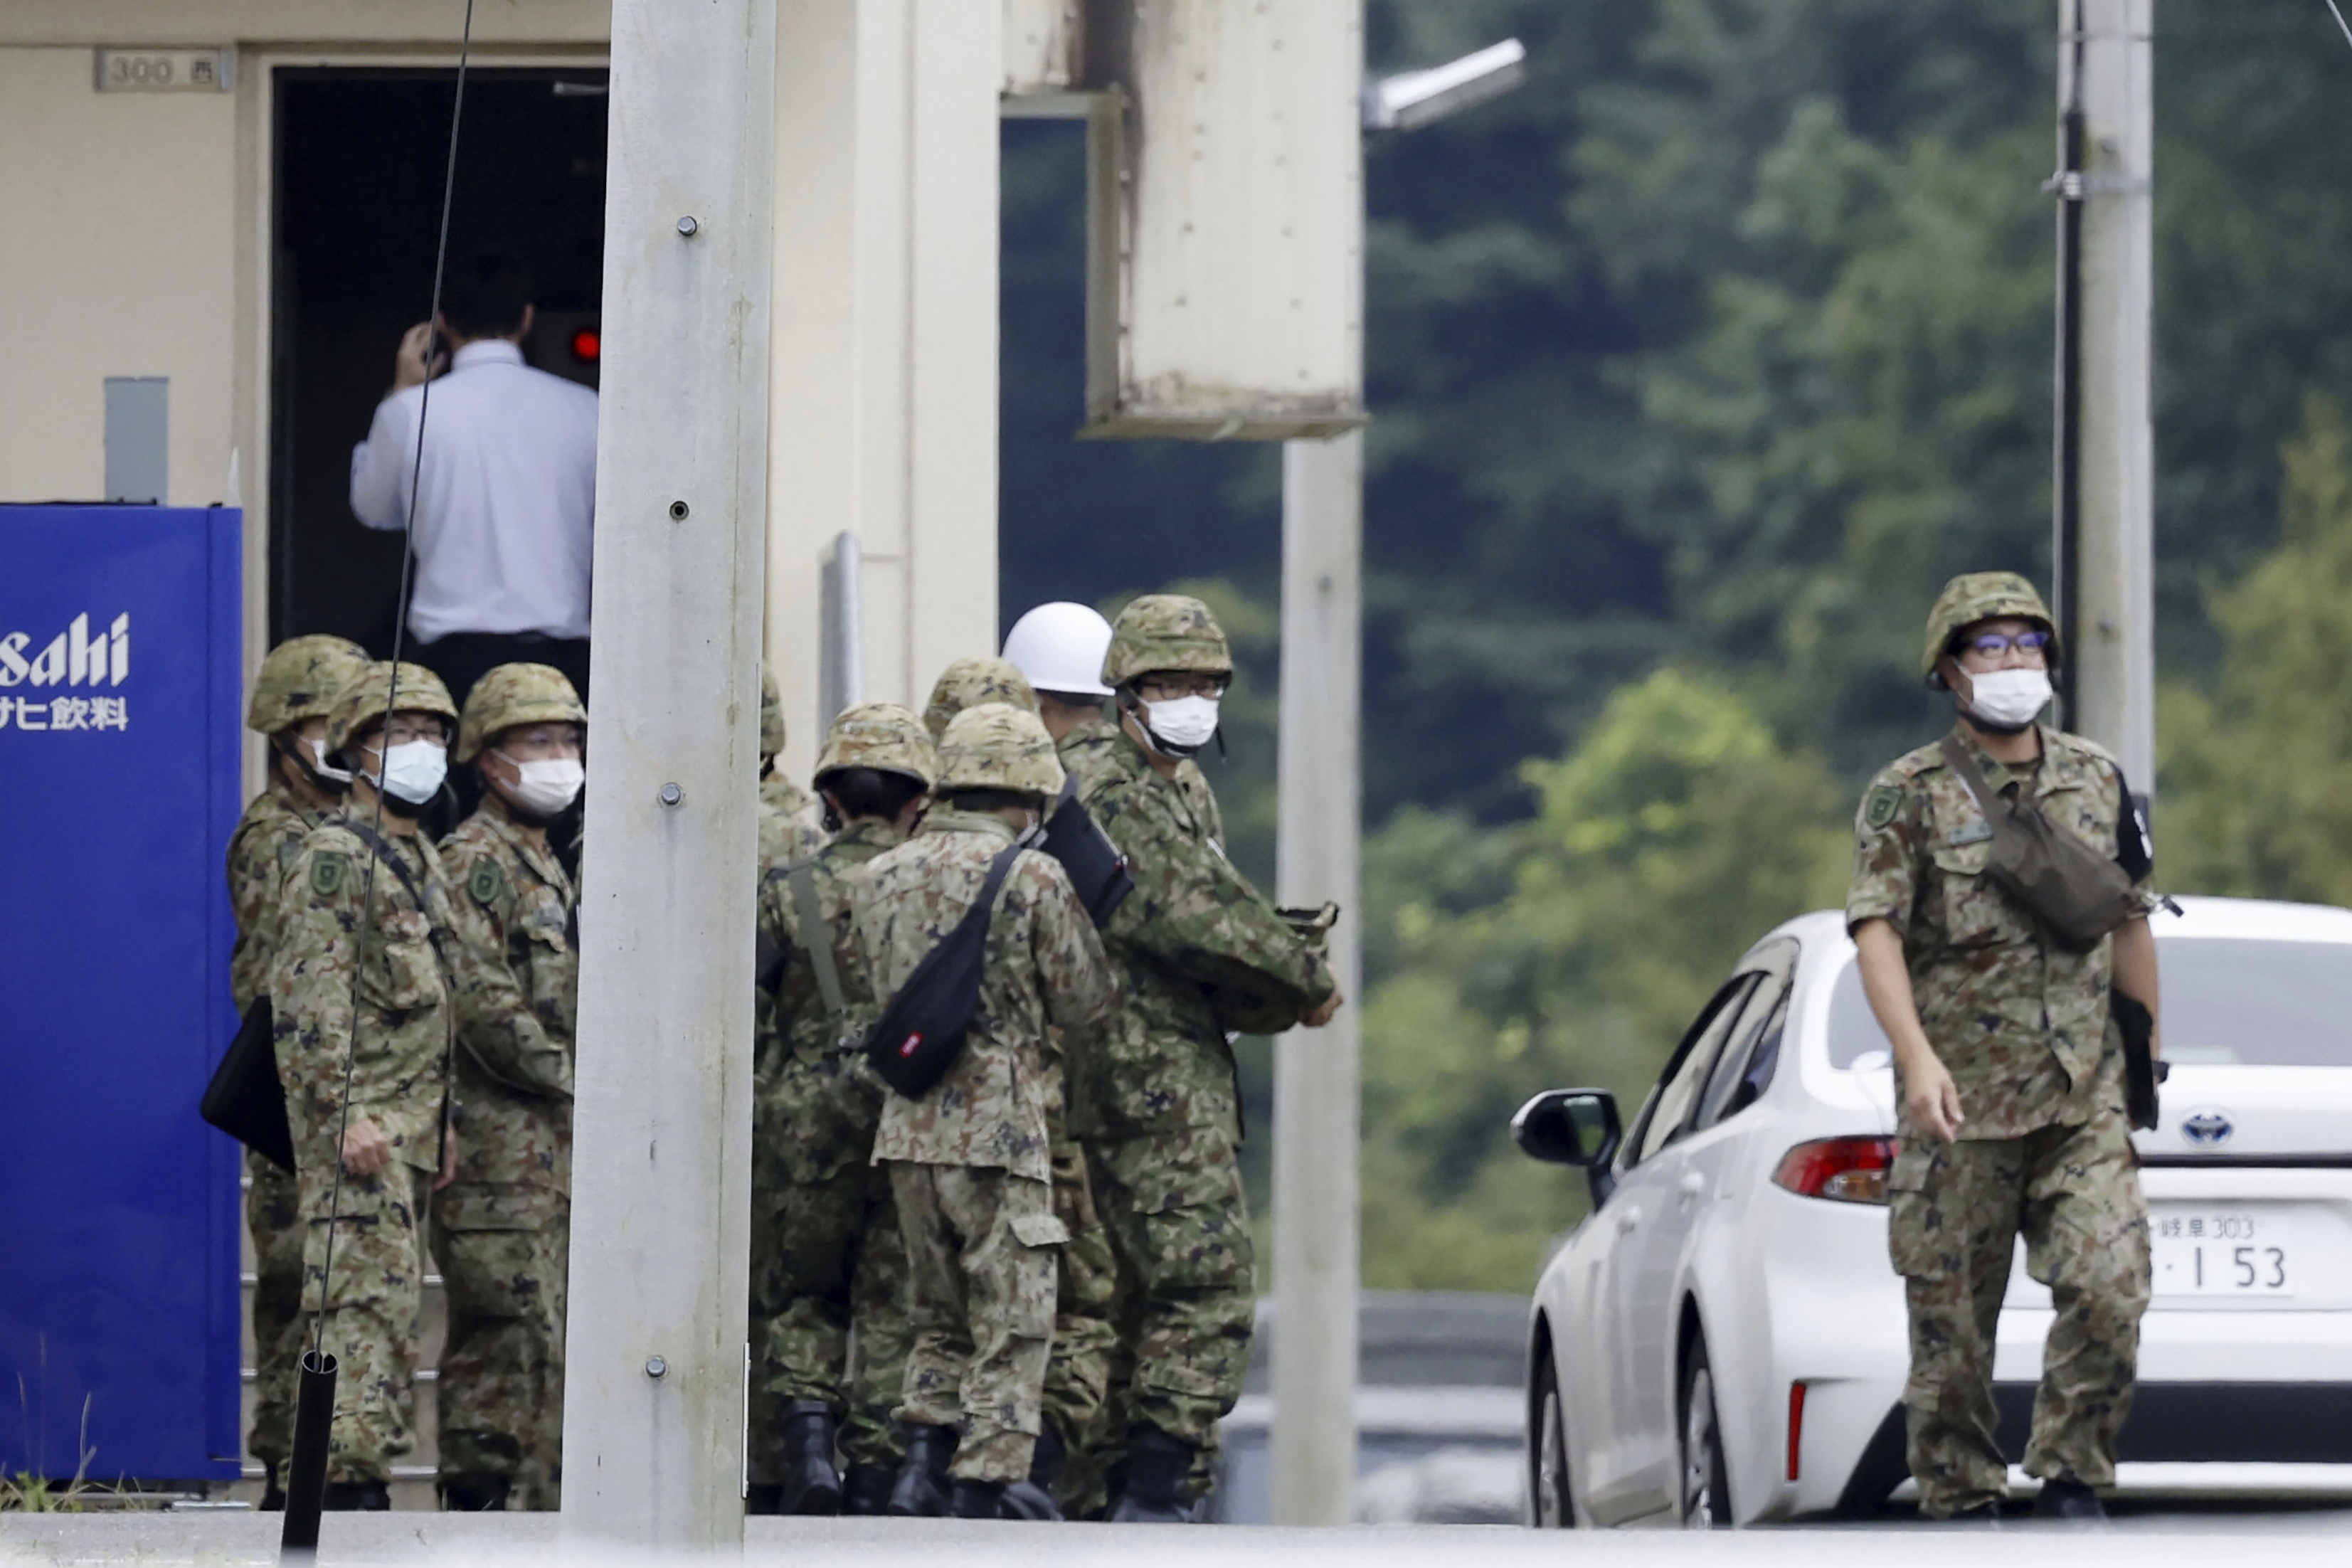 14일 일본 중부 기후의 육상자위대 사격장에서 총기난사 사건이 발생한 후 자위대 대원들이 현장 부근에 모여있다. 이번 사건으로 2명이 숨지고 1명이 중상을 입었다.  기후 AP 뉴시스